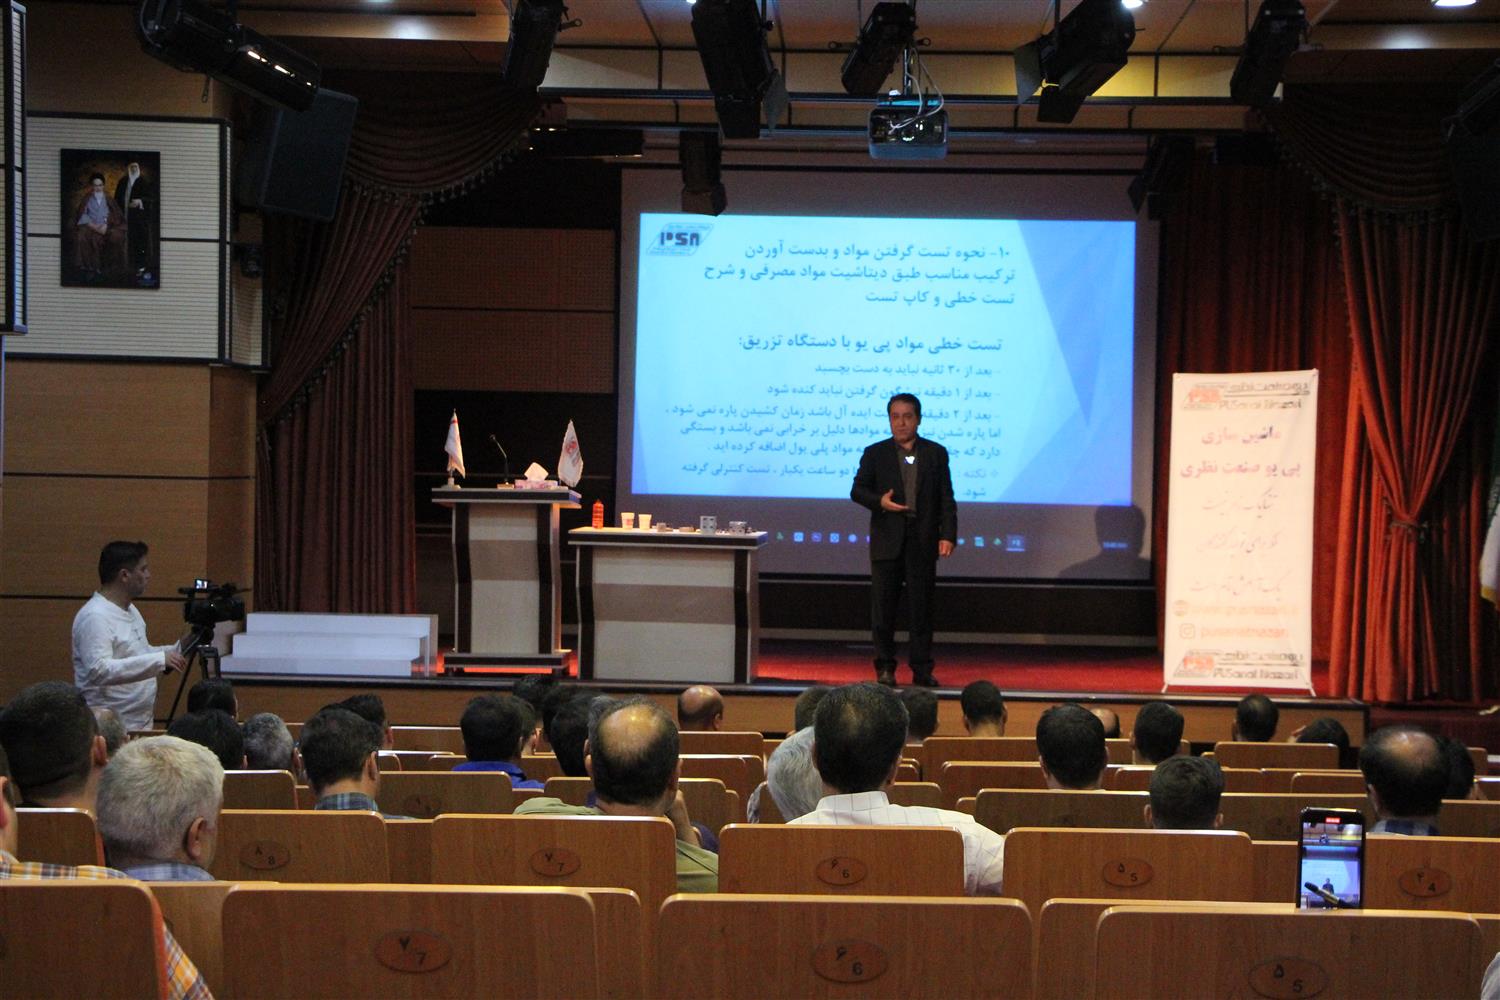 هفتمین کلاس آموزشی اپراتوری کاربردی دستگاه تزریق پی یو در شهر تبریز مورخه 1401/4/25 برگزار شد